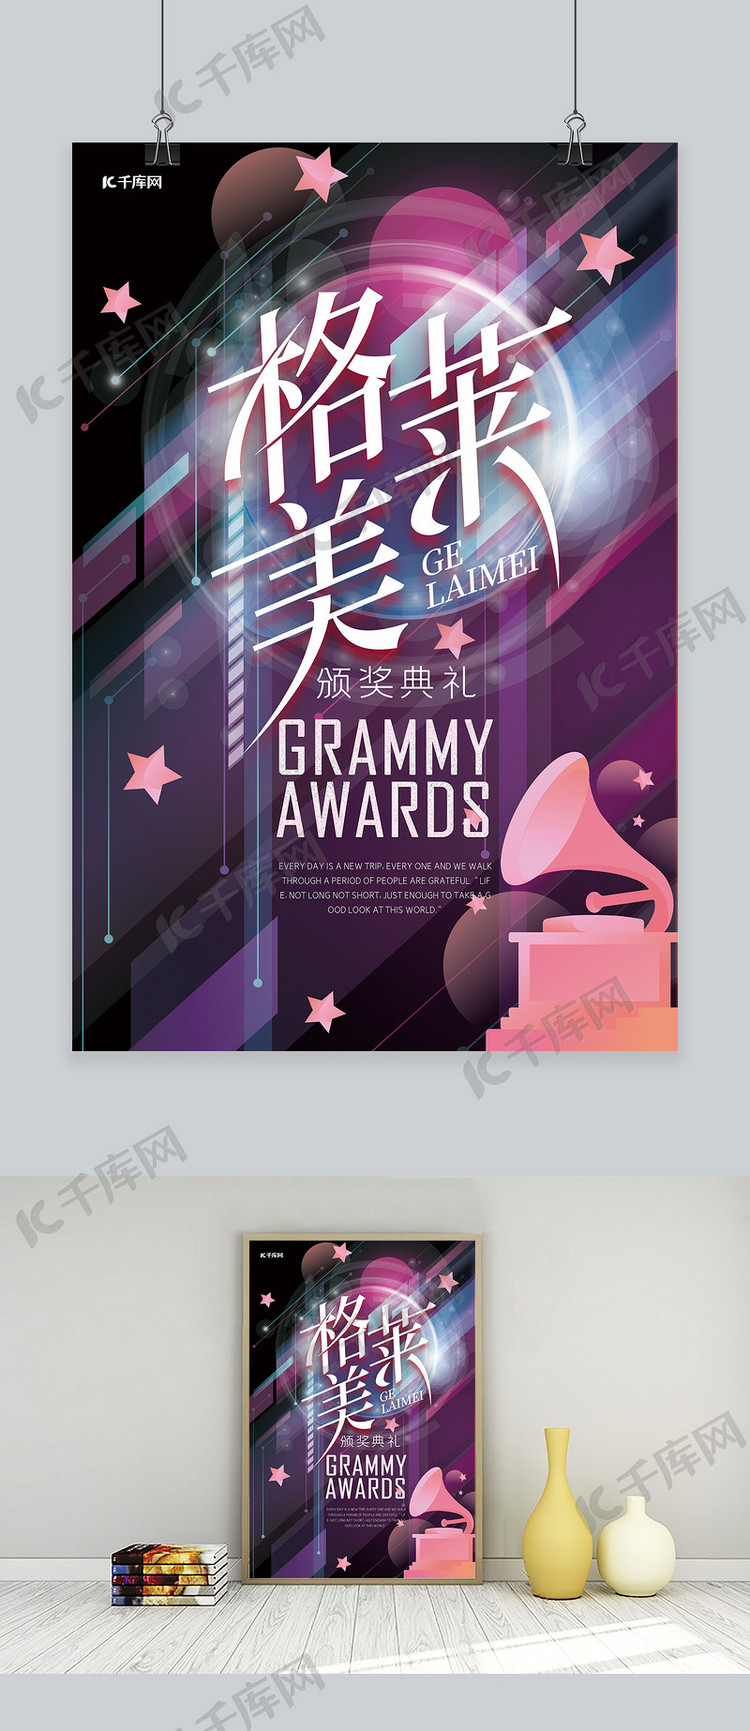 格莱美颁奖典礼音乐紫色系简约海报